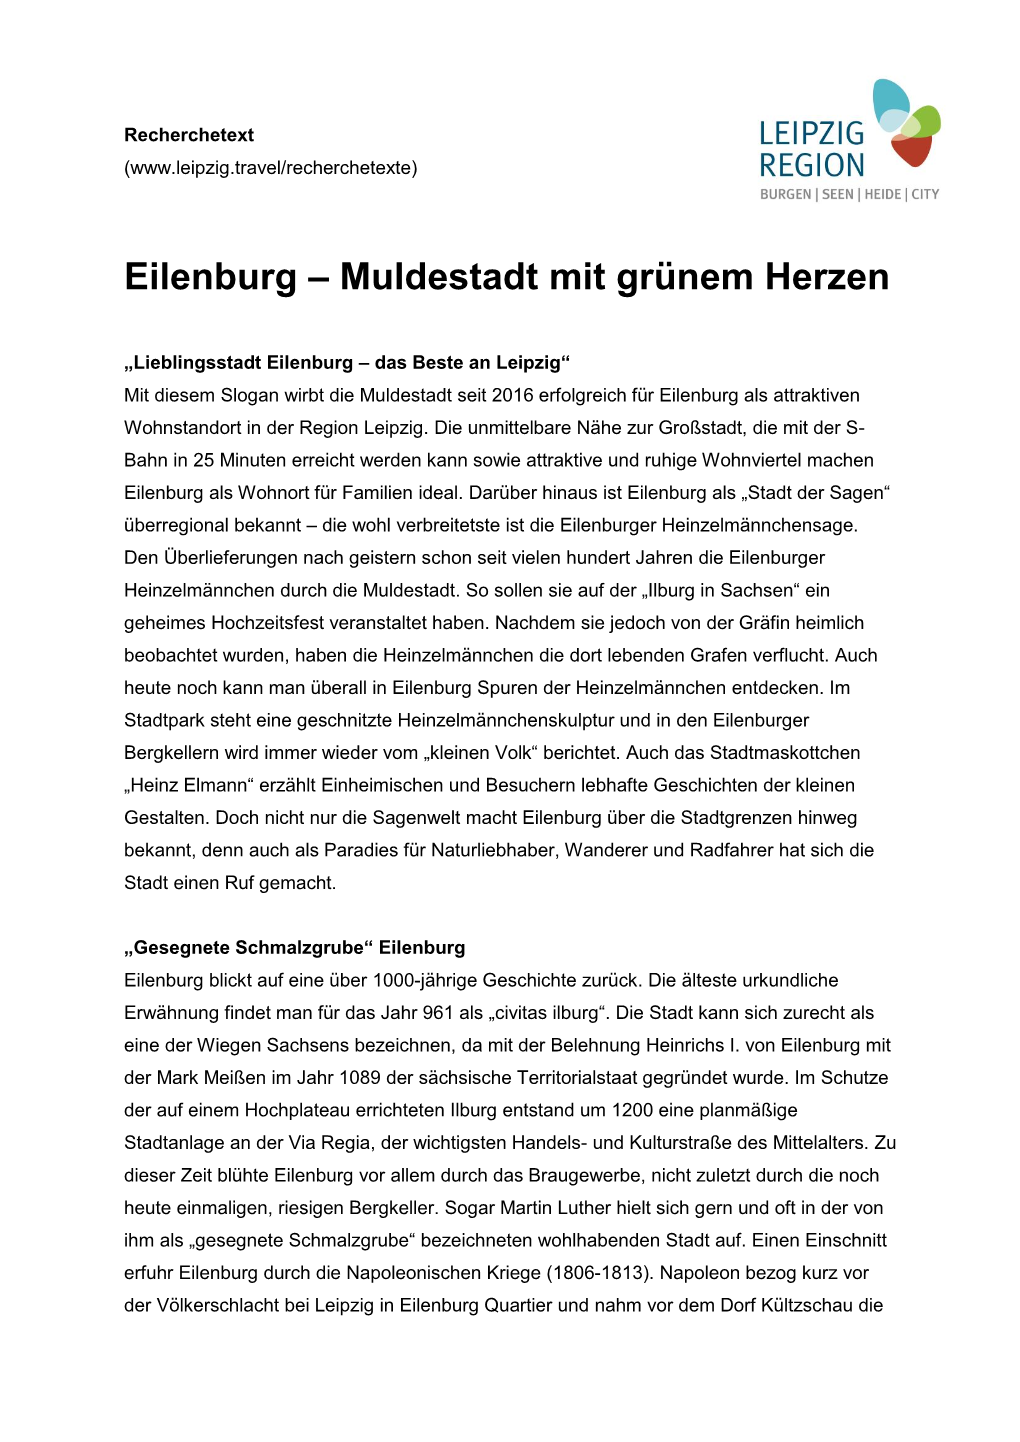 Eilenburg – Muldestadt Mit Grünem Herzen